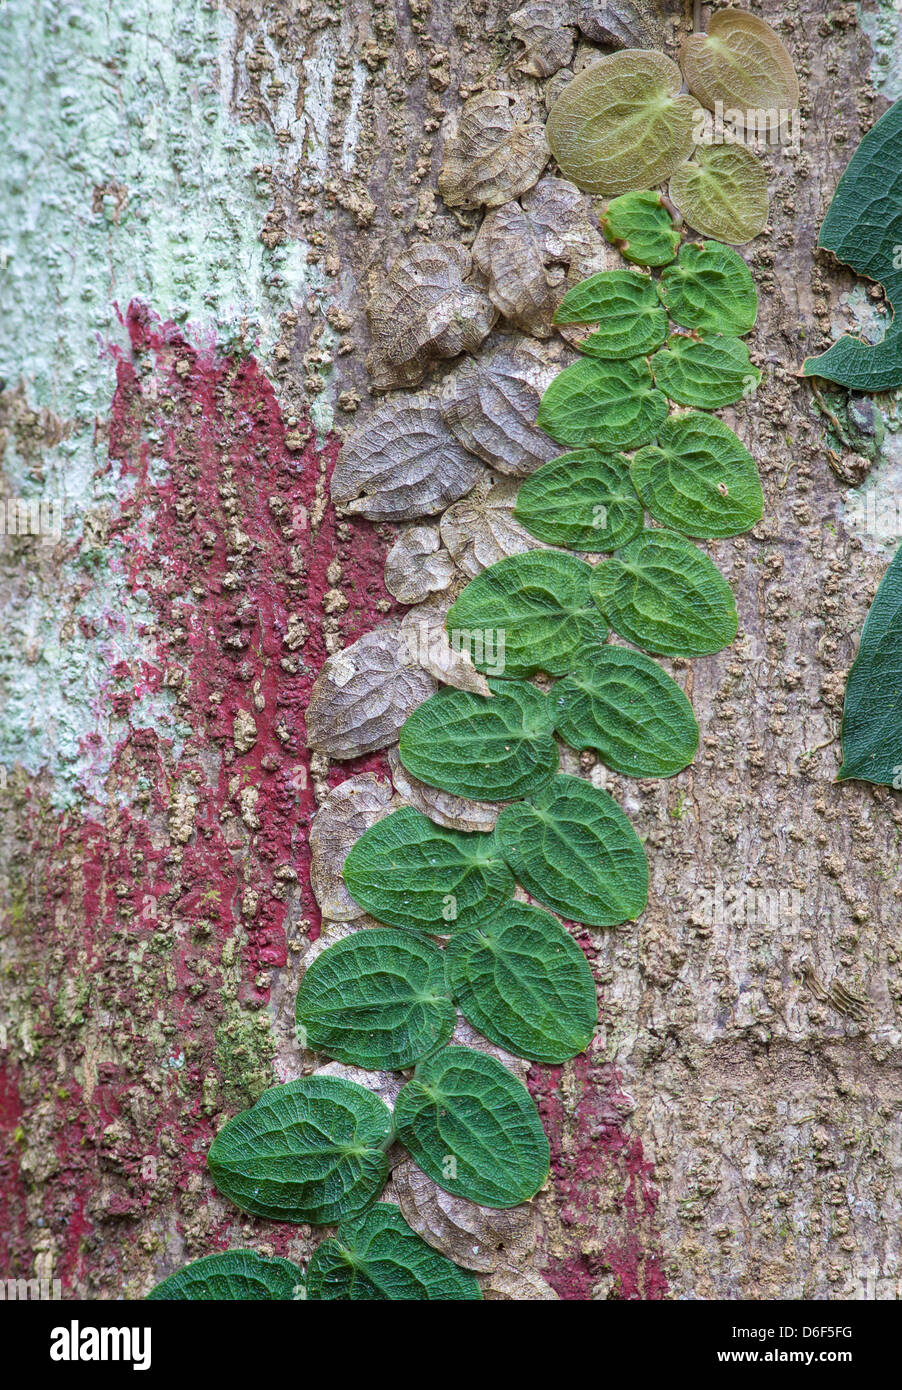 Bunten Regenwald Baumstamm mit rot und blass blaugrünen Algen bedeckt und Endivie flach kriechende Reben in verschiedenen Schattierungen Borneo Stockfoto